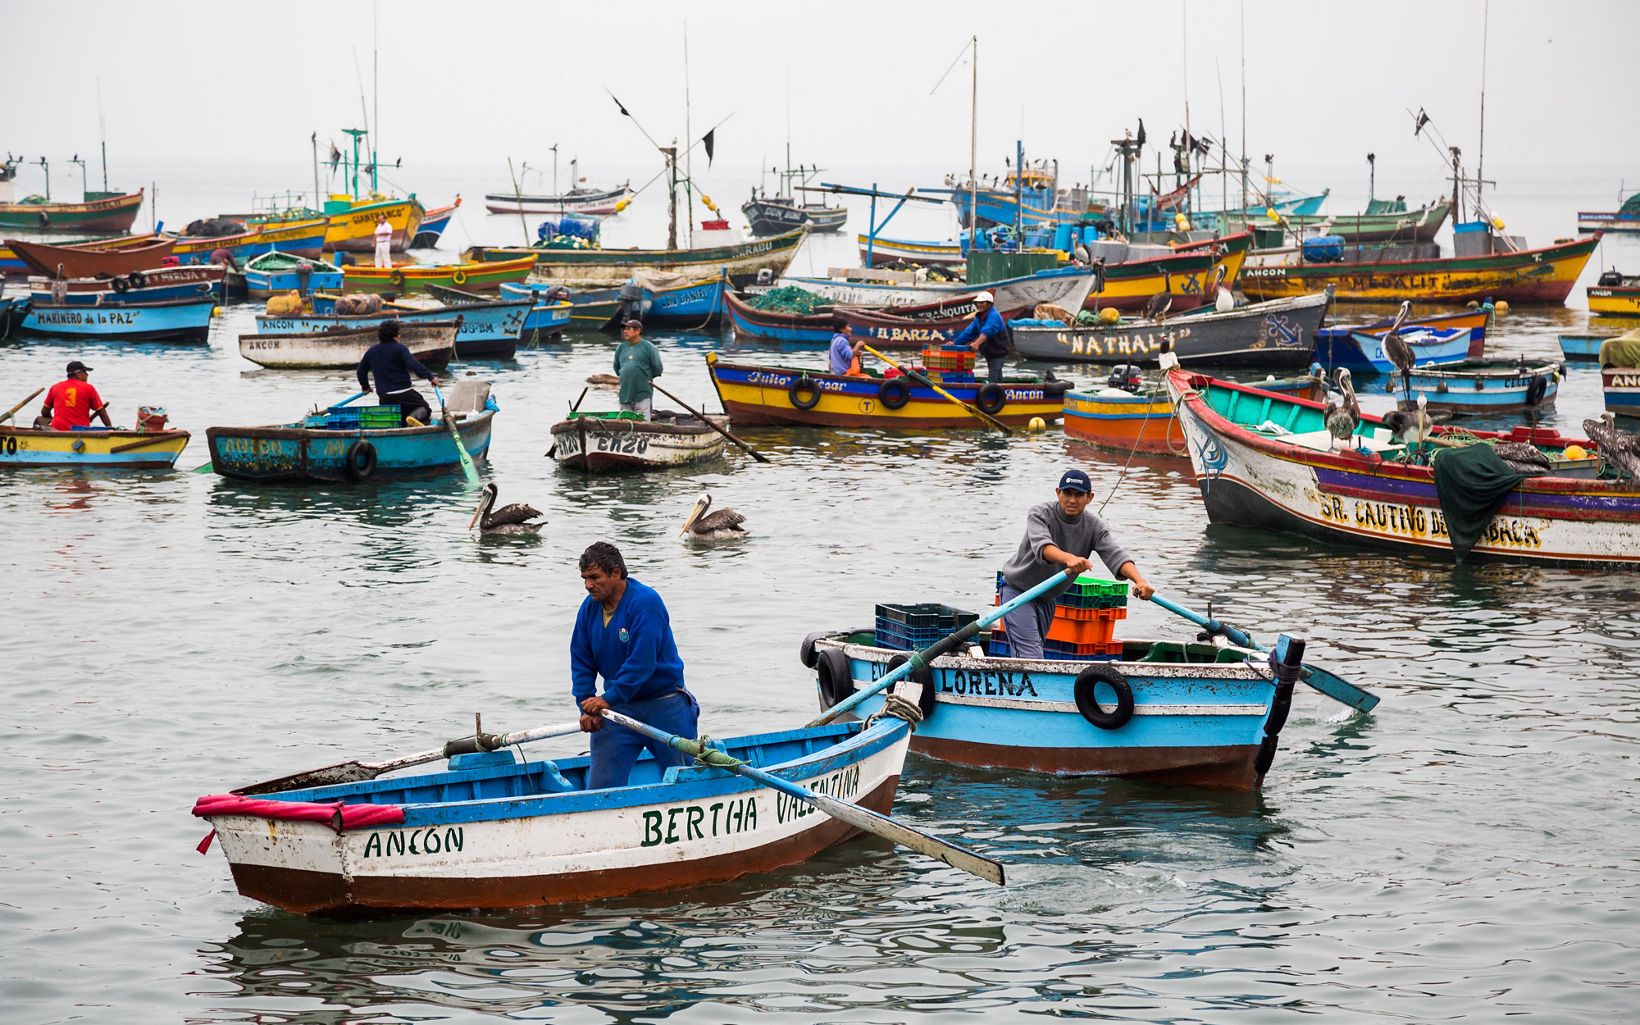 Perú líder en pesquerías Perú es una de las naciones líderes pesqueras a nivel mundial, ocupando históricamente el segundo lugar después de China, respecto a las toneladas de peces silvestres capturad © Jason Houston 